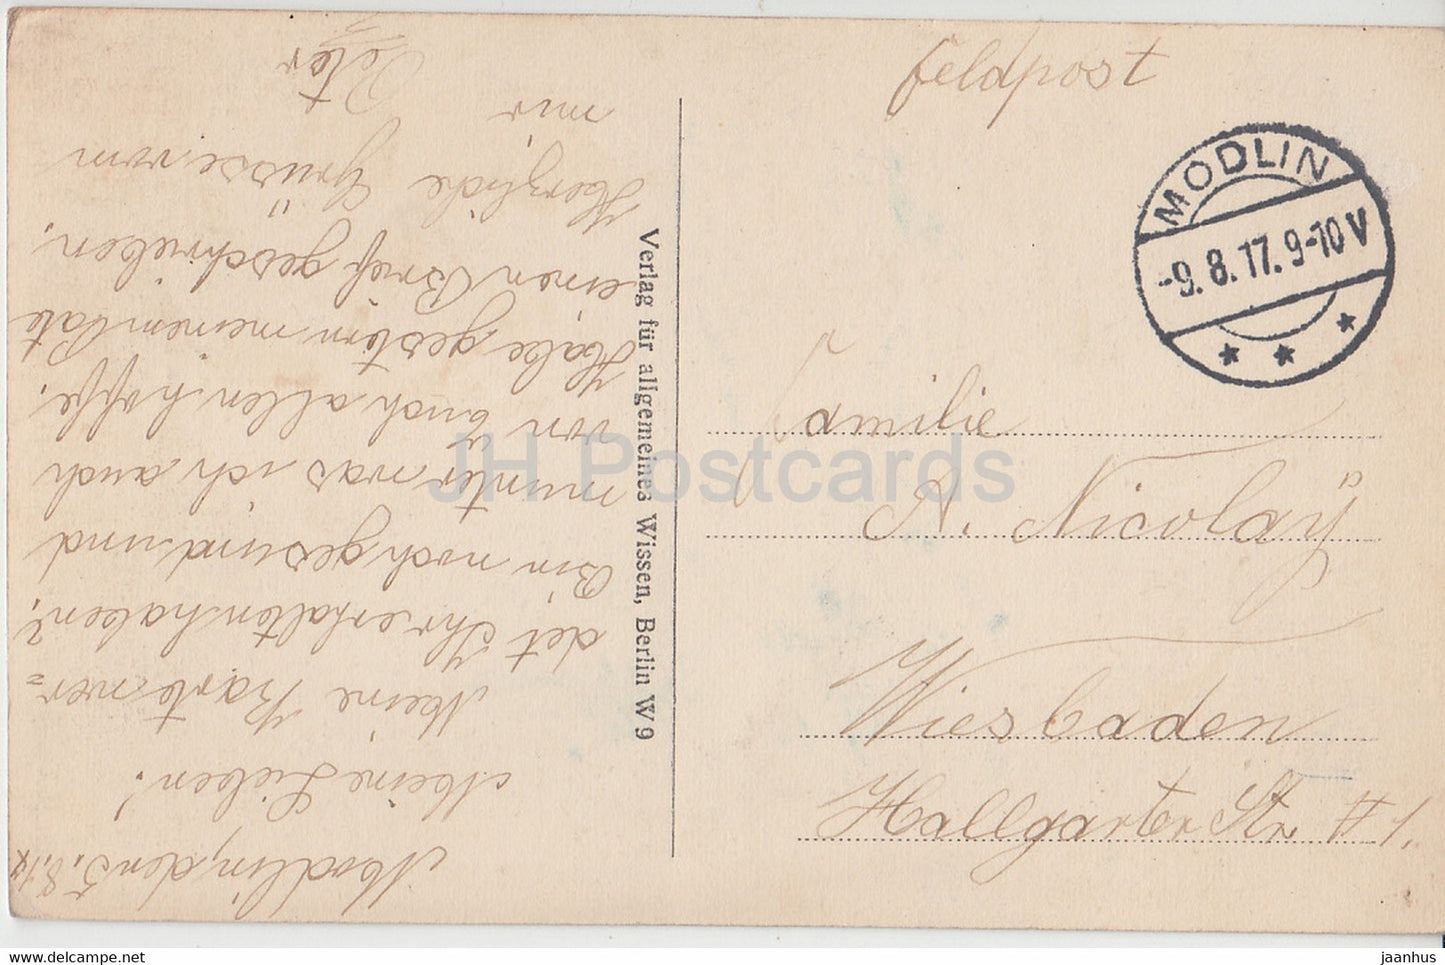 Die von den Russen gesprengte Weichselbrücke bei Warschau - Militär - Feldpost - alte Postkarte - 1917 - Polen - gebraucht